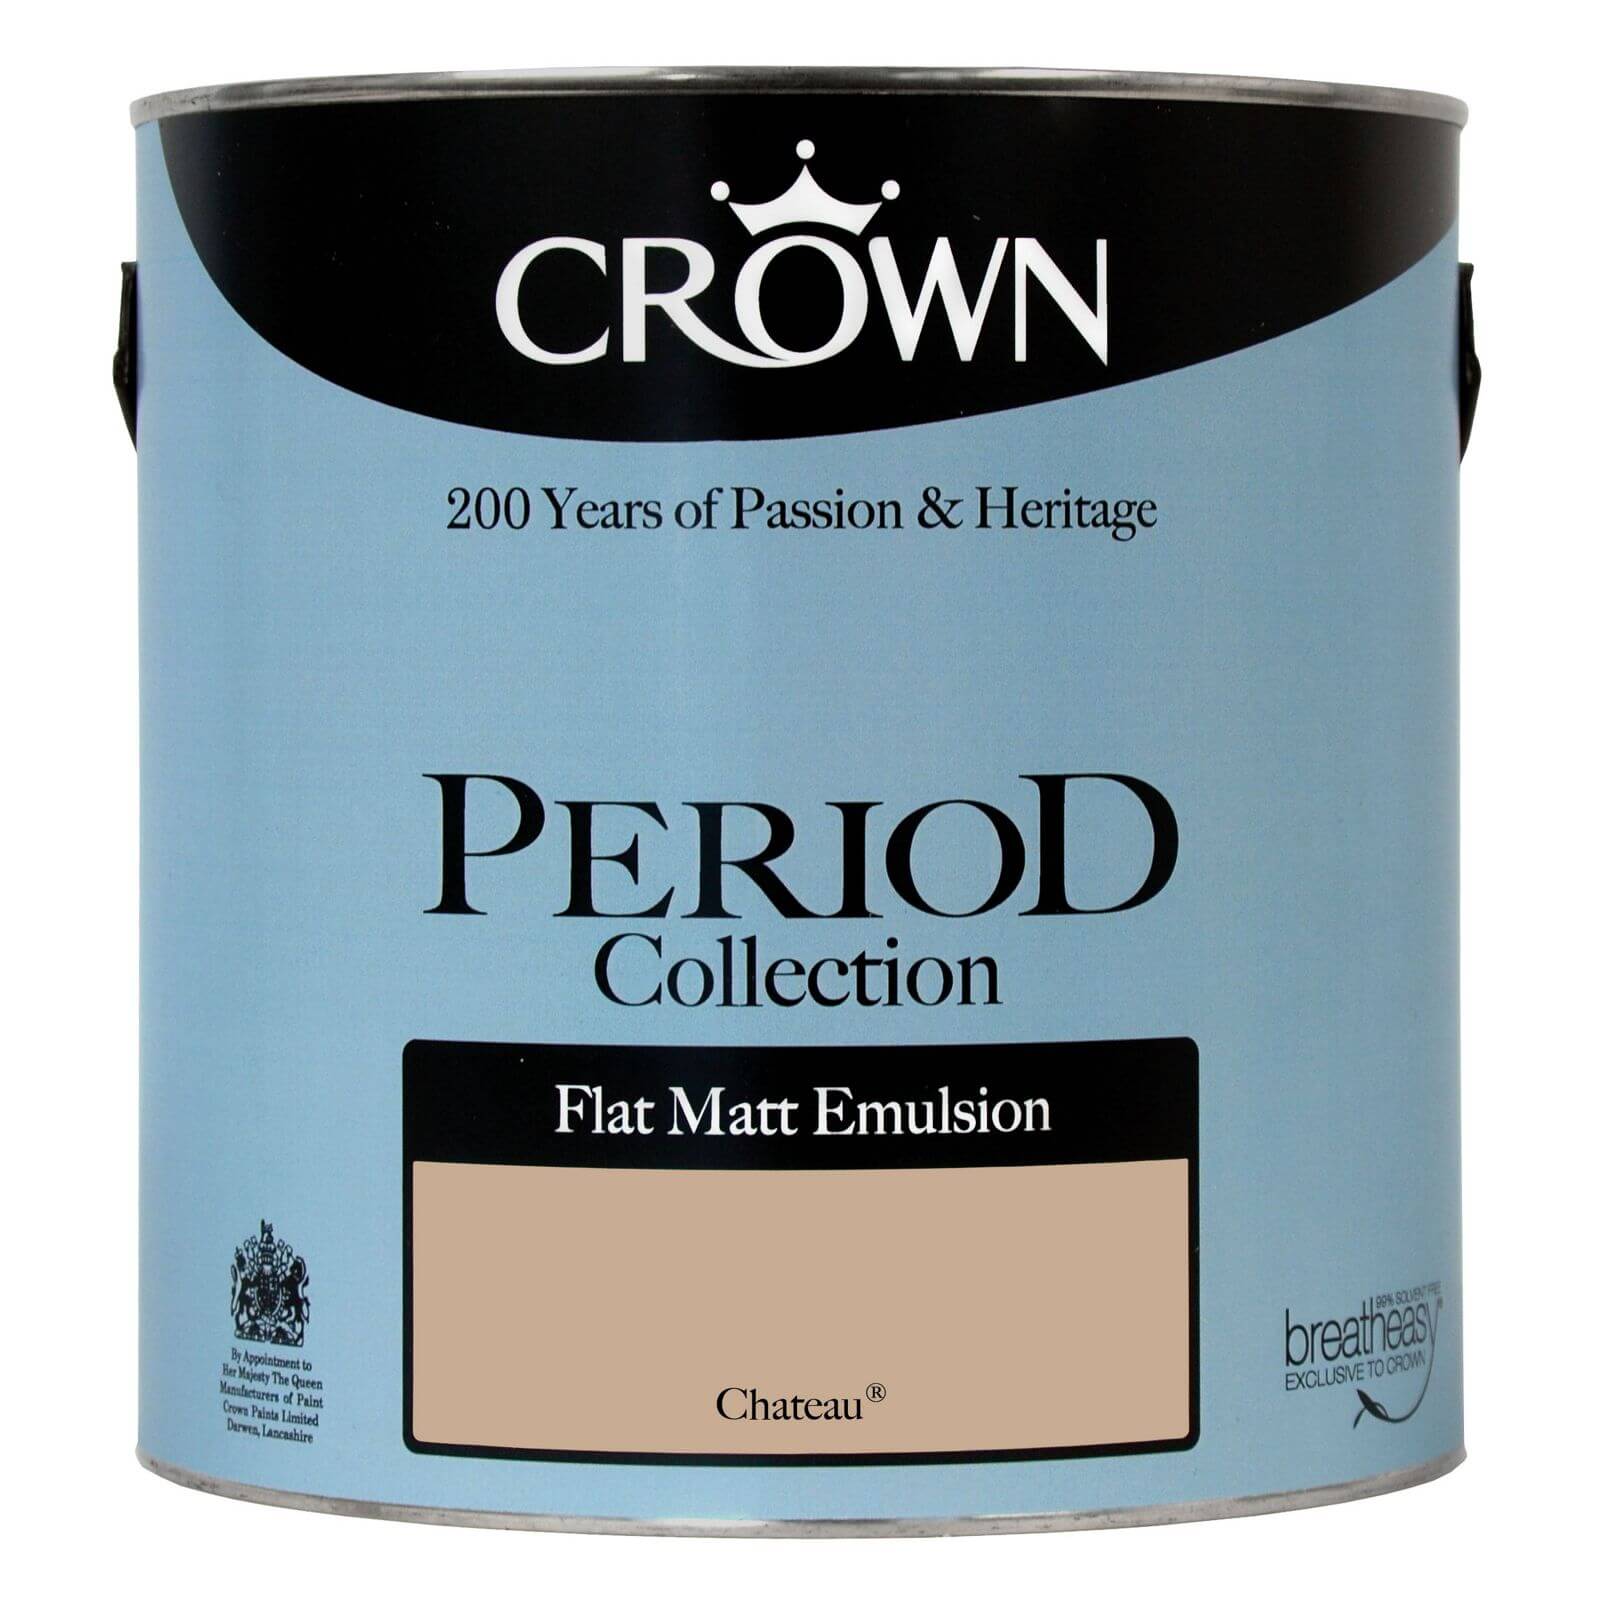 Crown Period Colours Breatheasy Chateau - Flat Matt Emulsion Paint - 2.5L